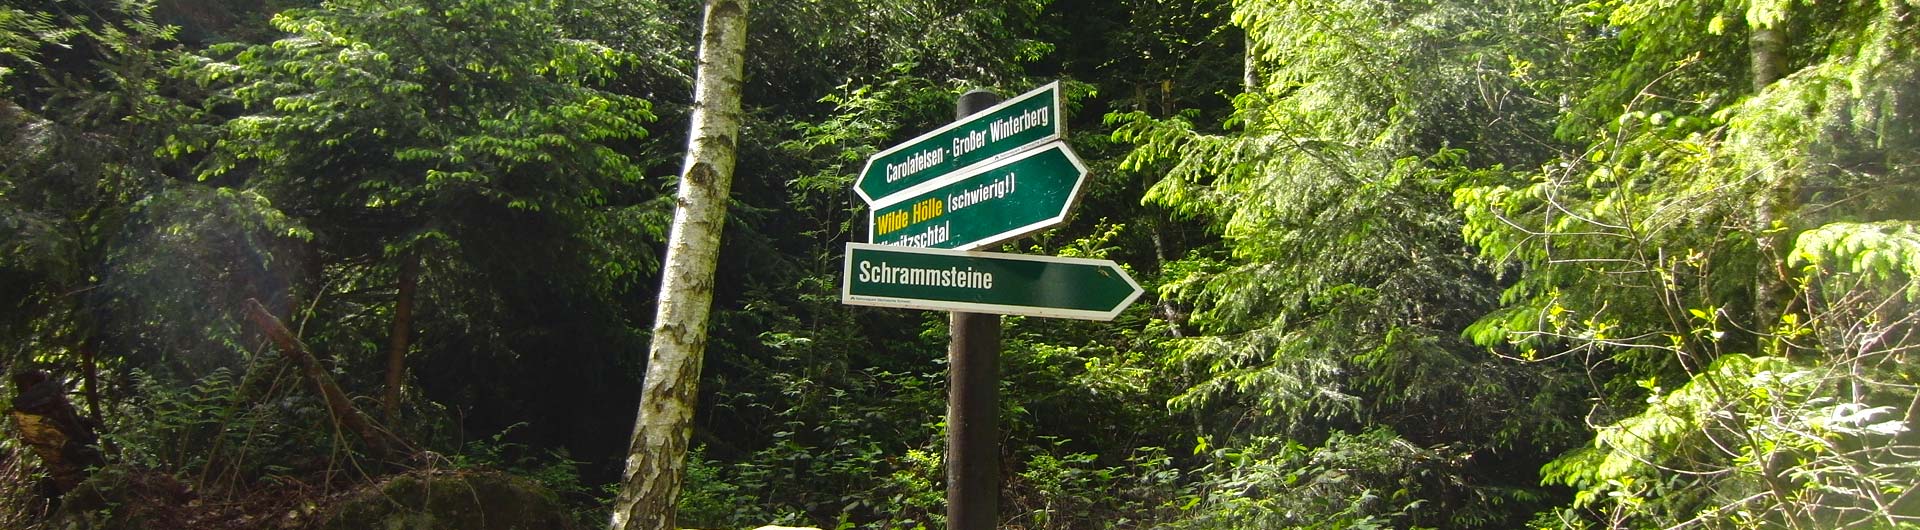 Hintere Sächsische Schweiz